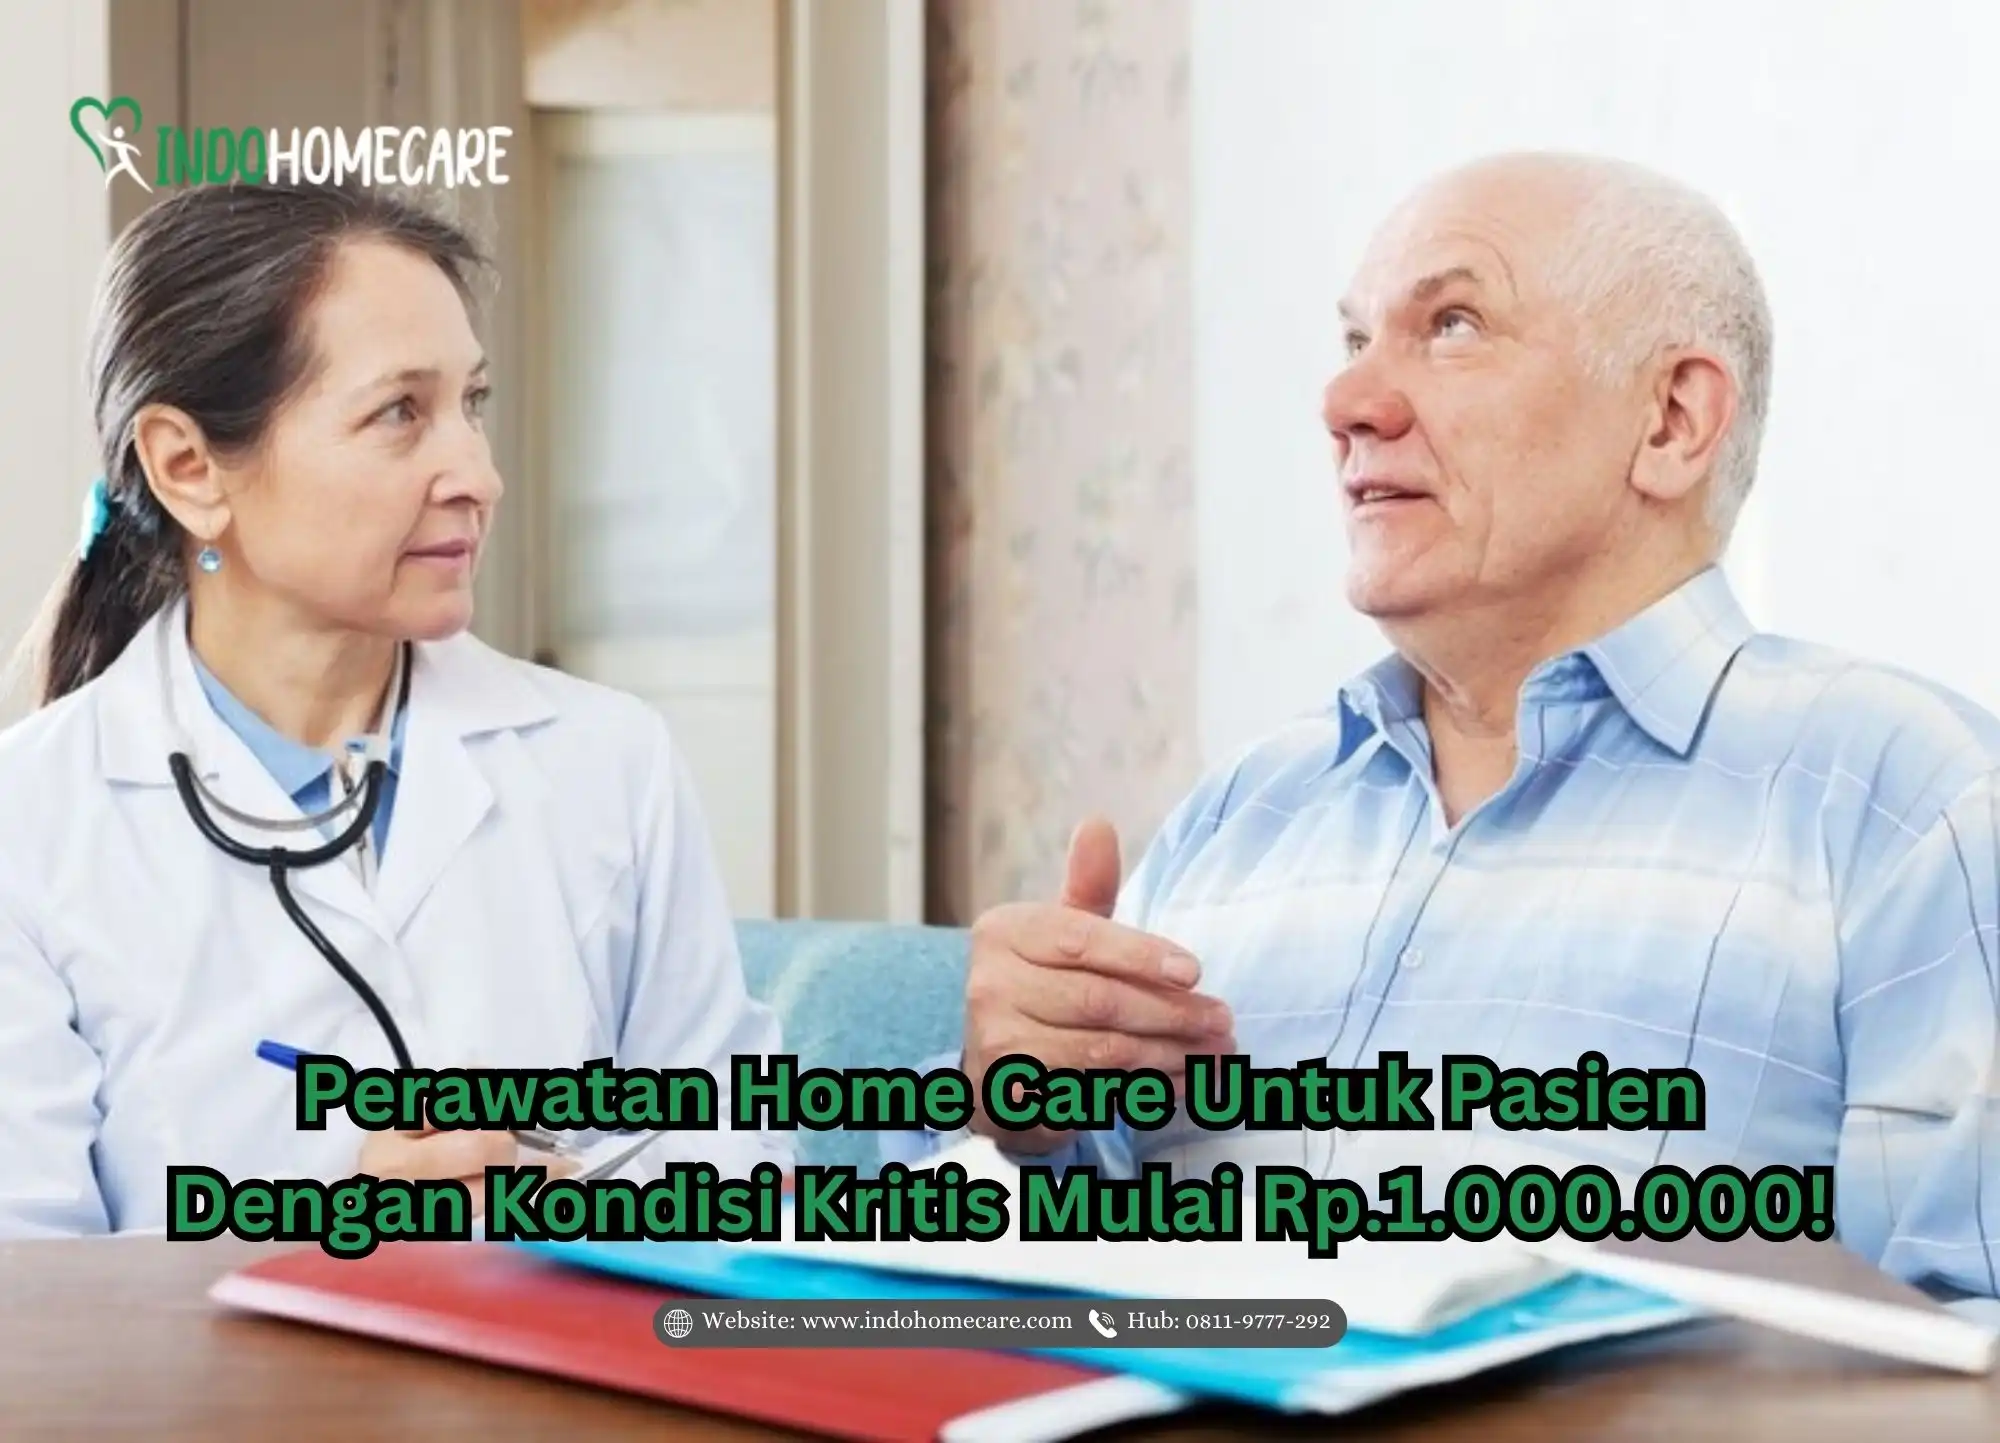 Perawatan Home Care Untuk Pasien Dengan Kondisi Kritis Mulai Rp.1.000.000!